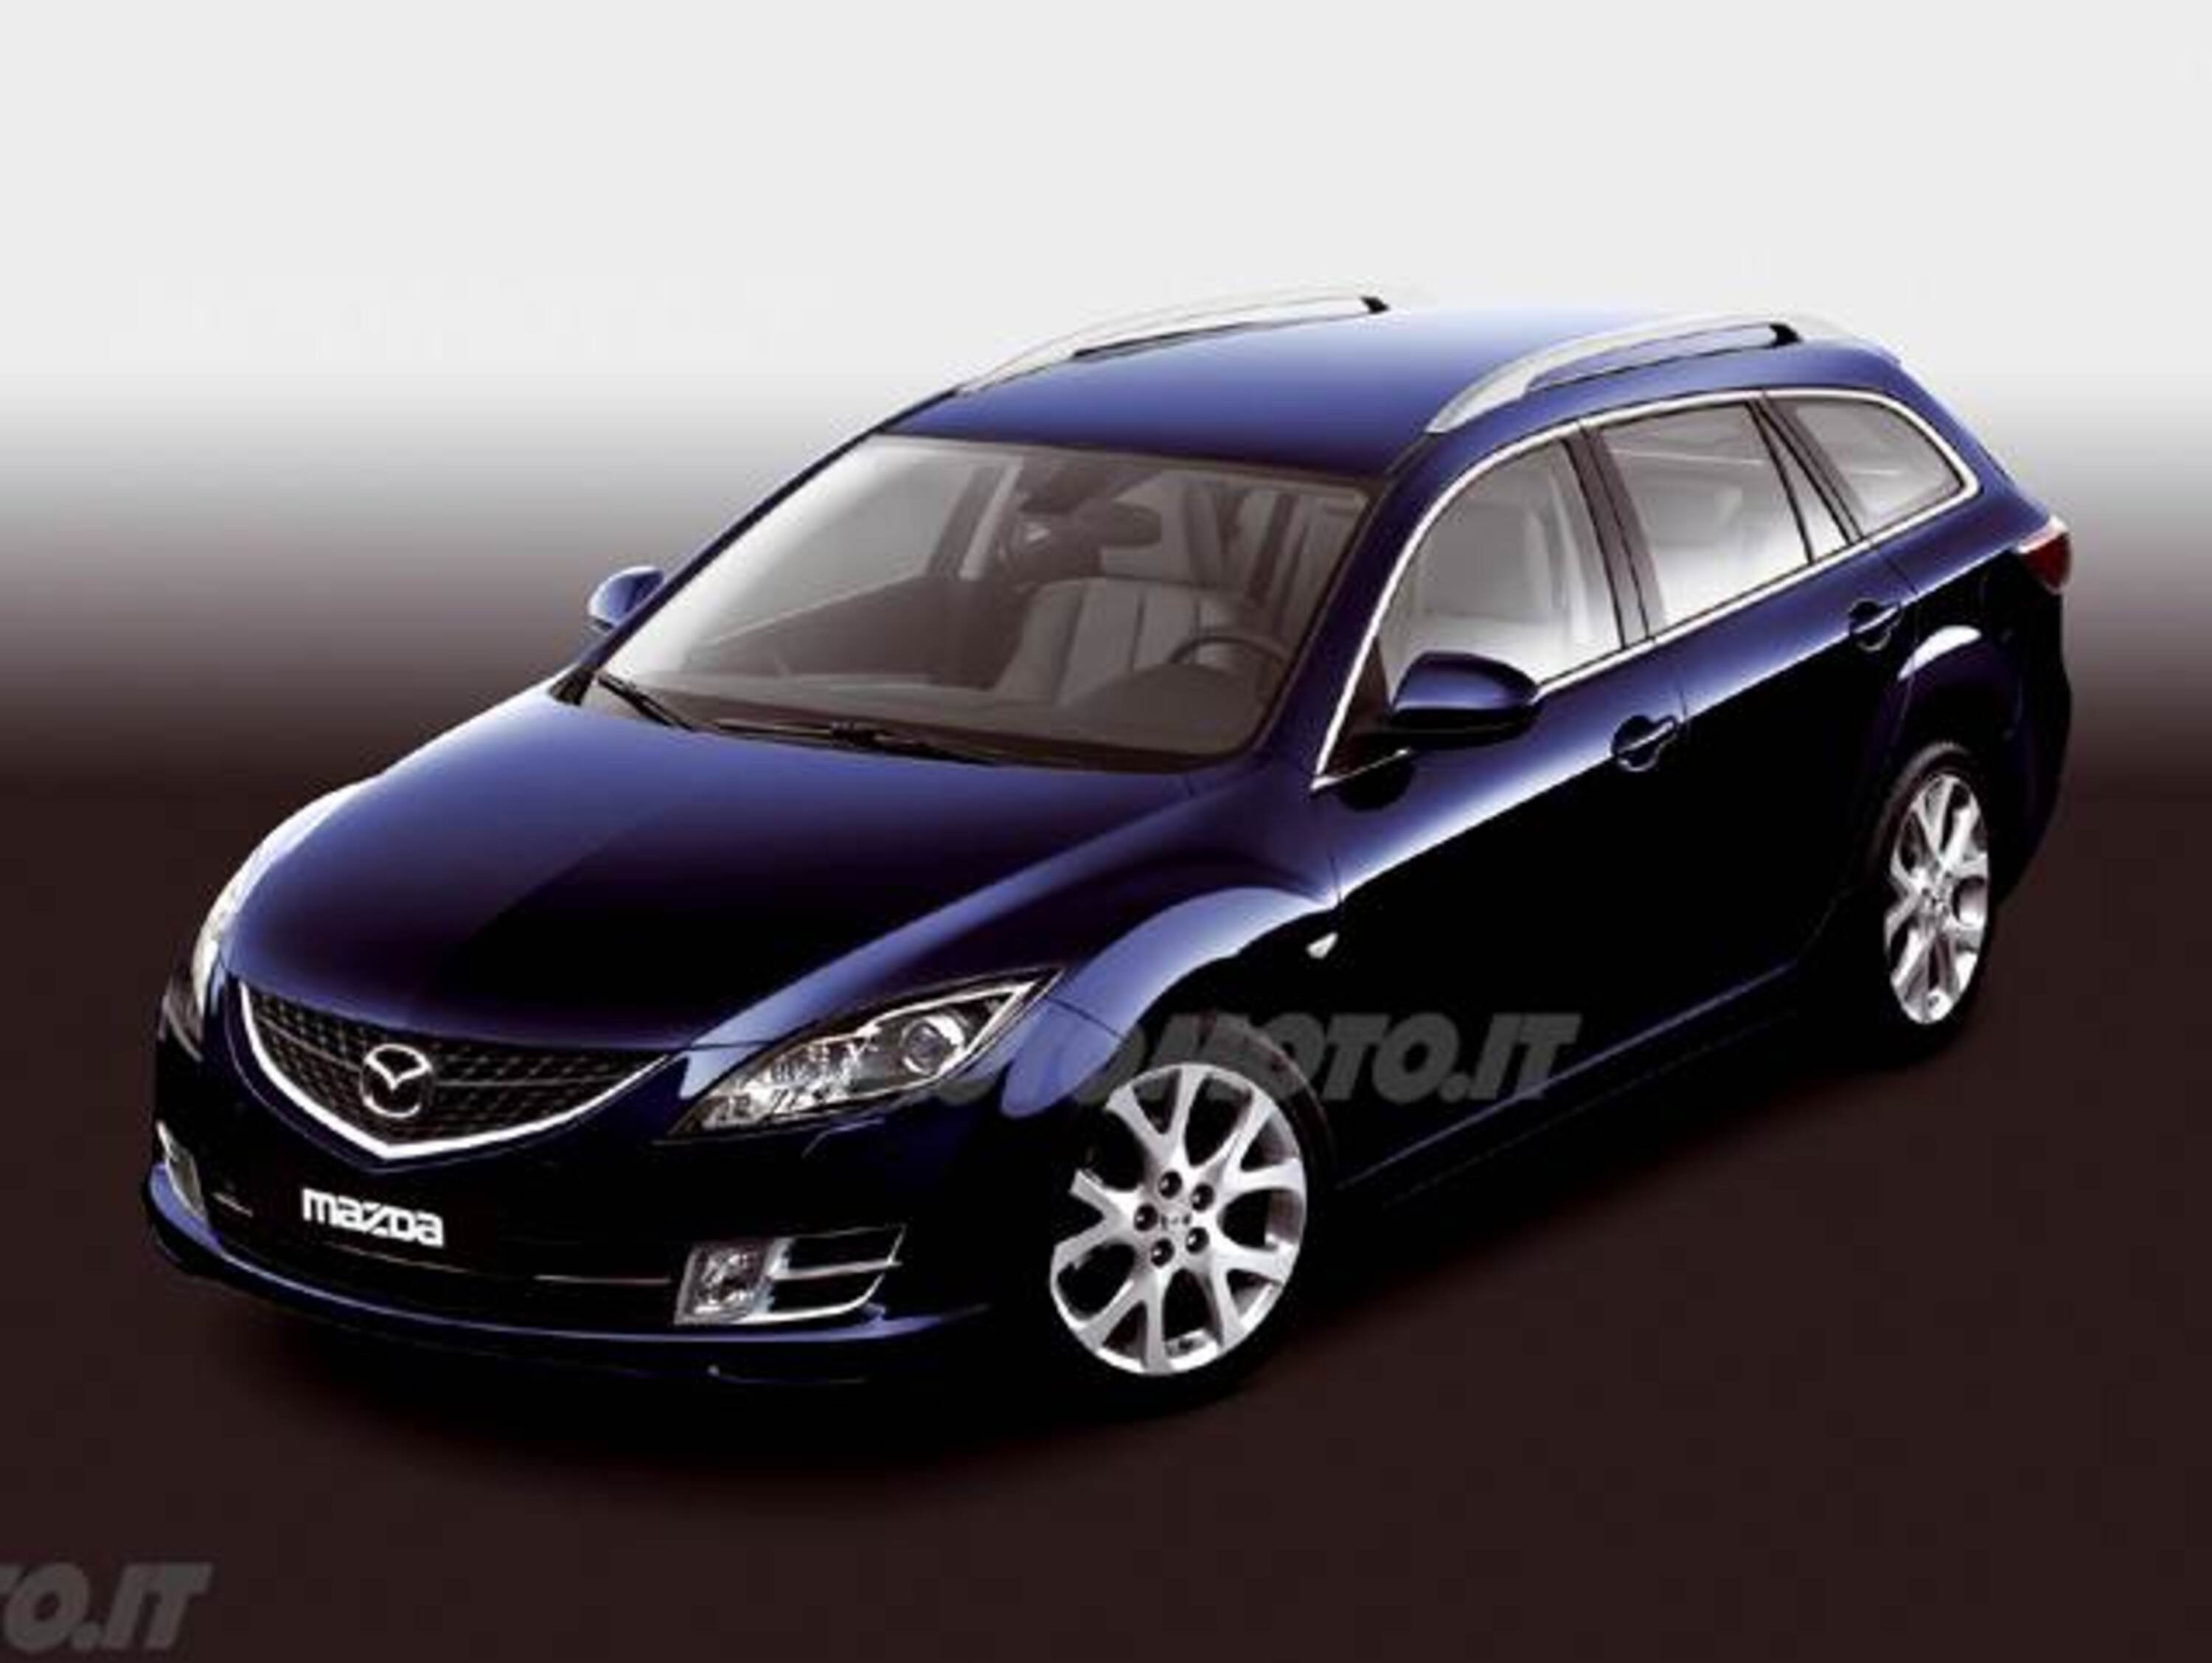 Mazda Mazda6 Station Wagon 2.0 CD 16V 140CV Wagon Luxury